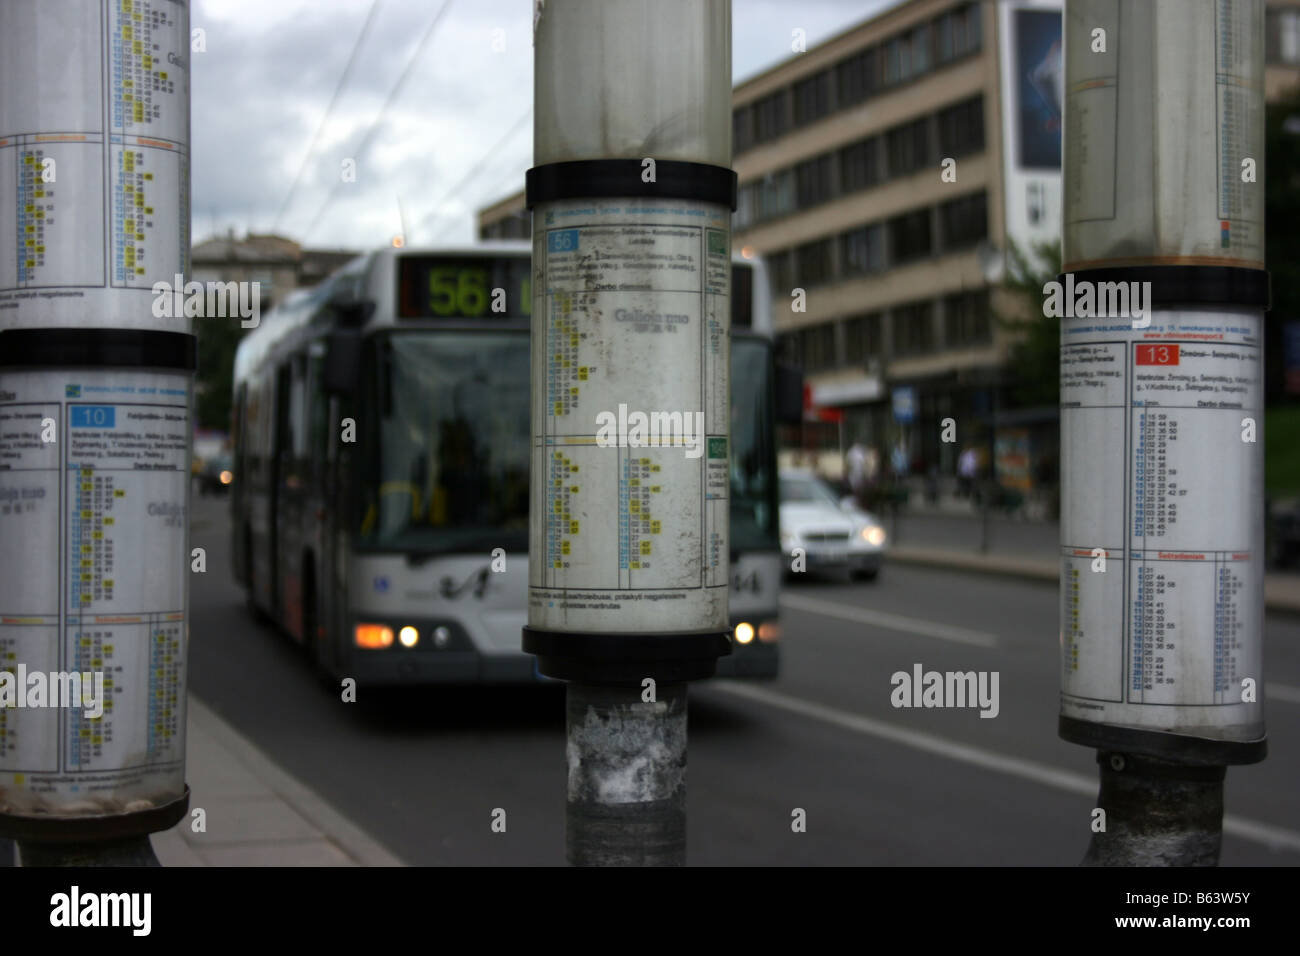 Calendrier, arrêt de bus, Vilnius, Lituanie Banque D'Images